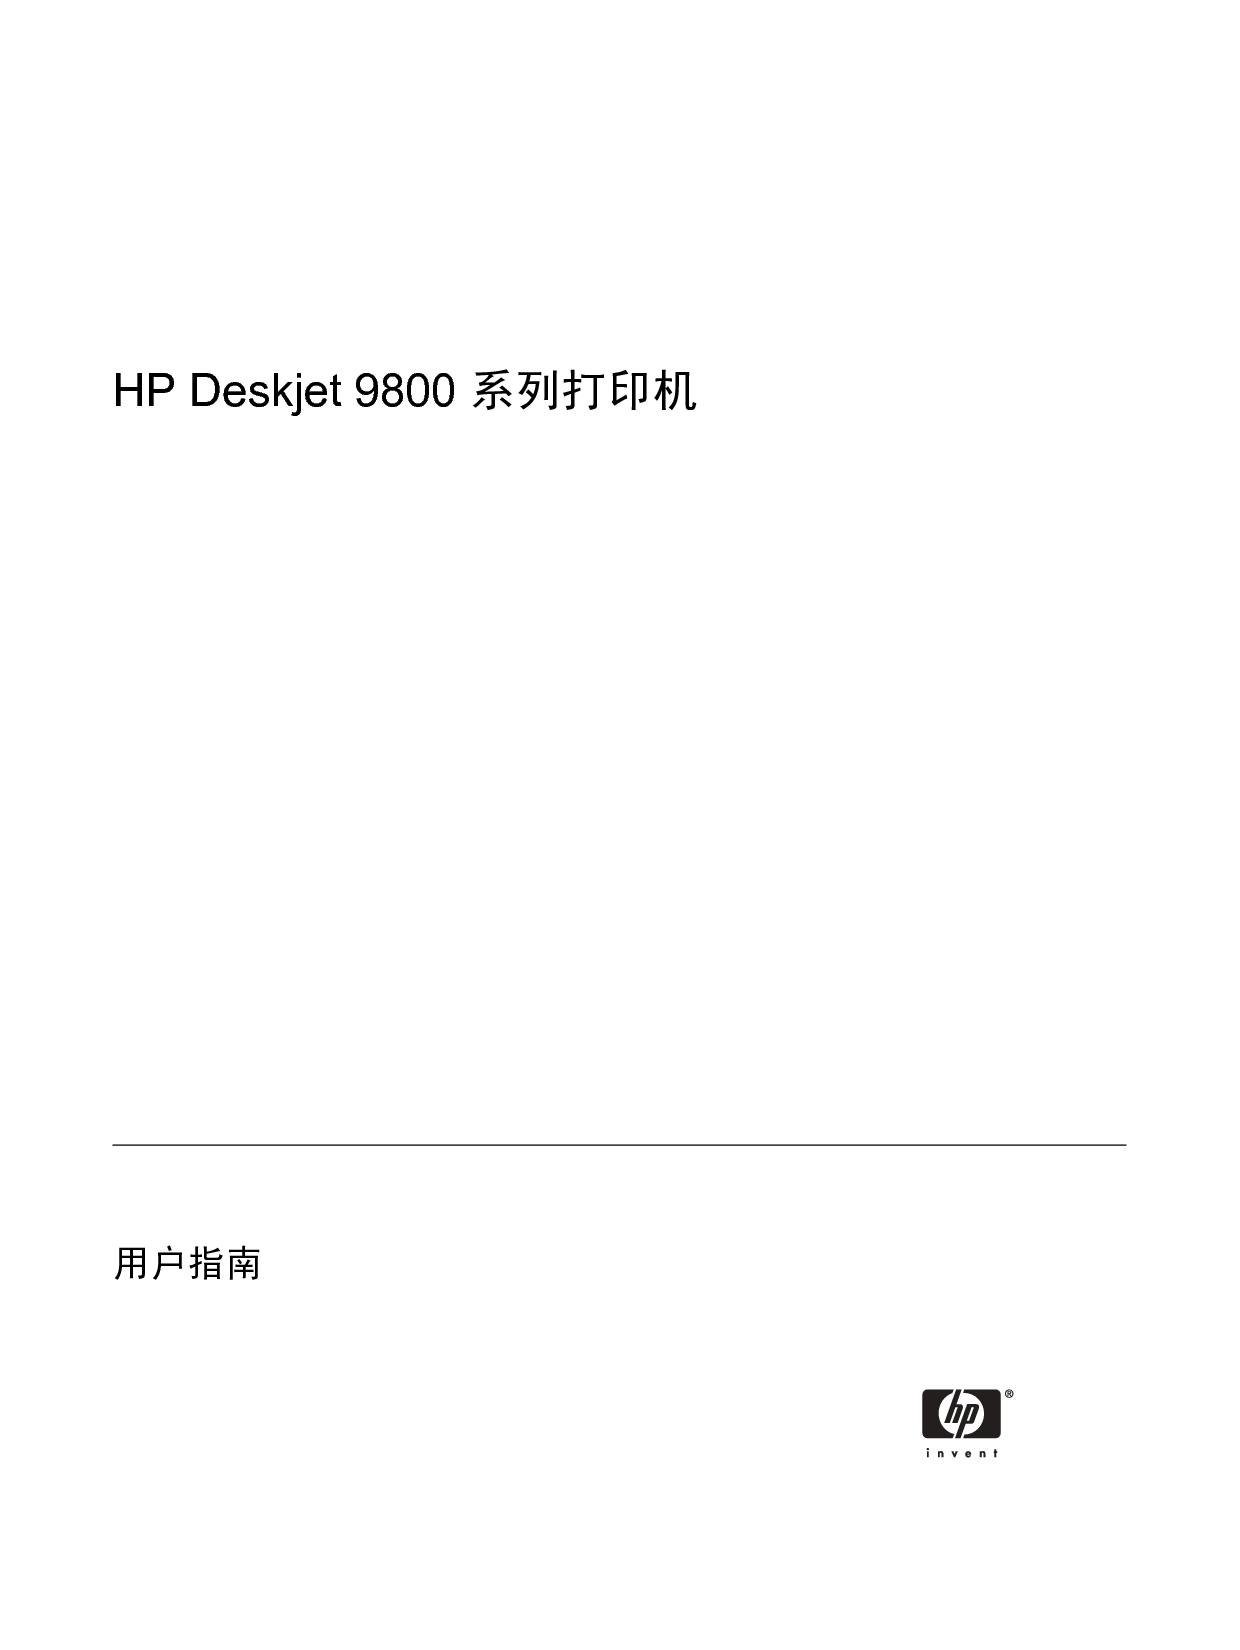 惠普 HP Deskjet 9800 用户指南 第2页